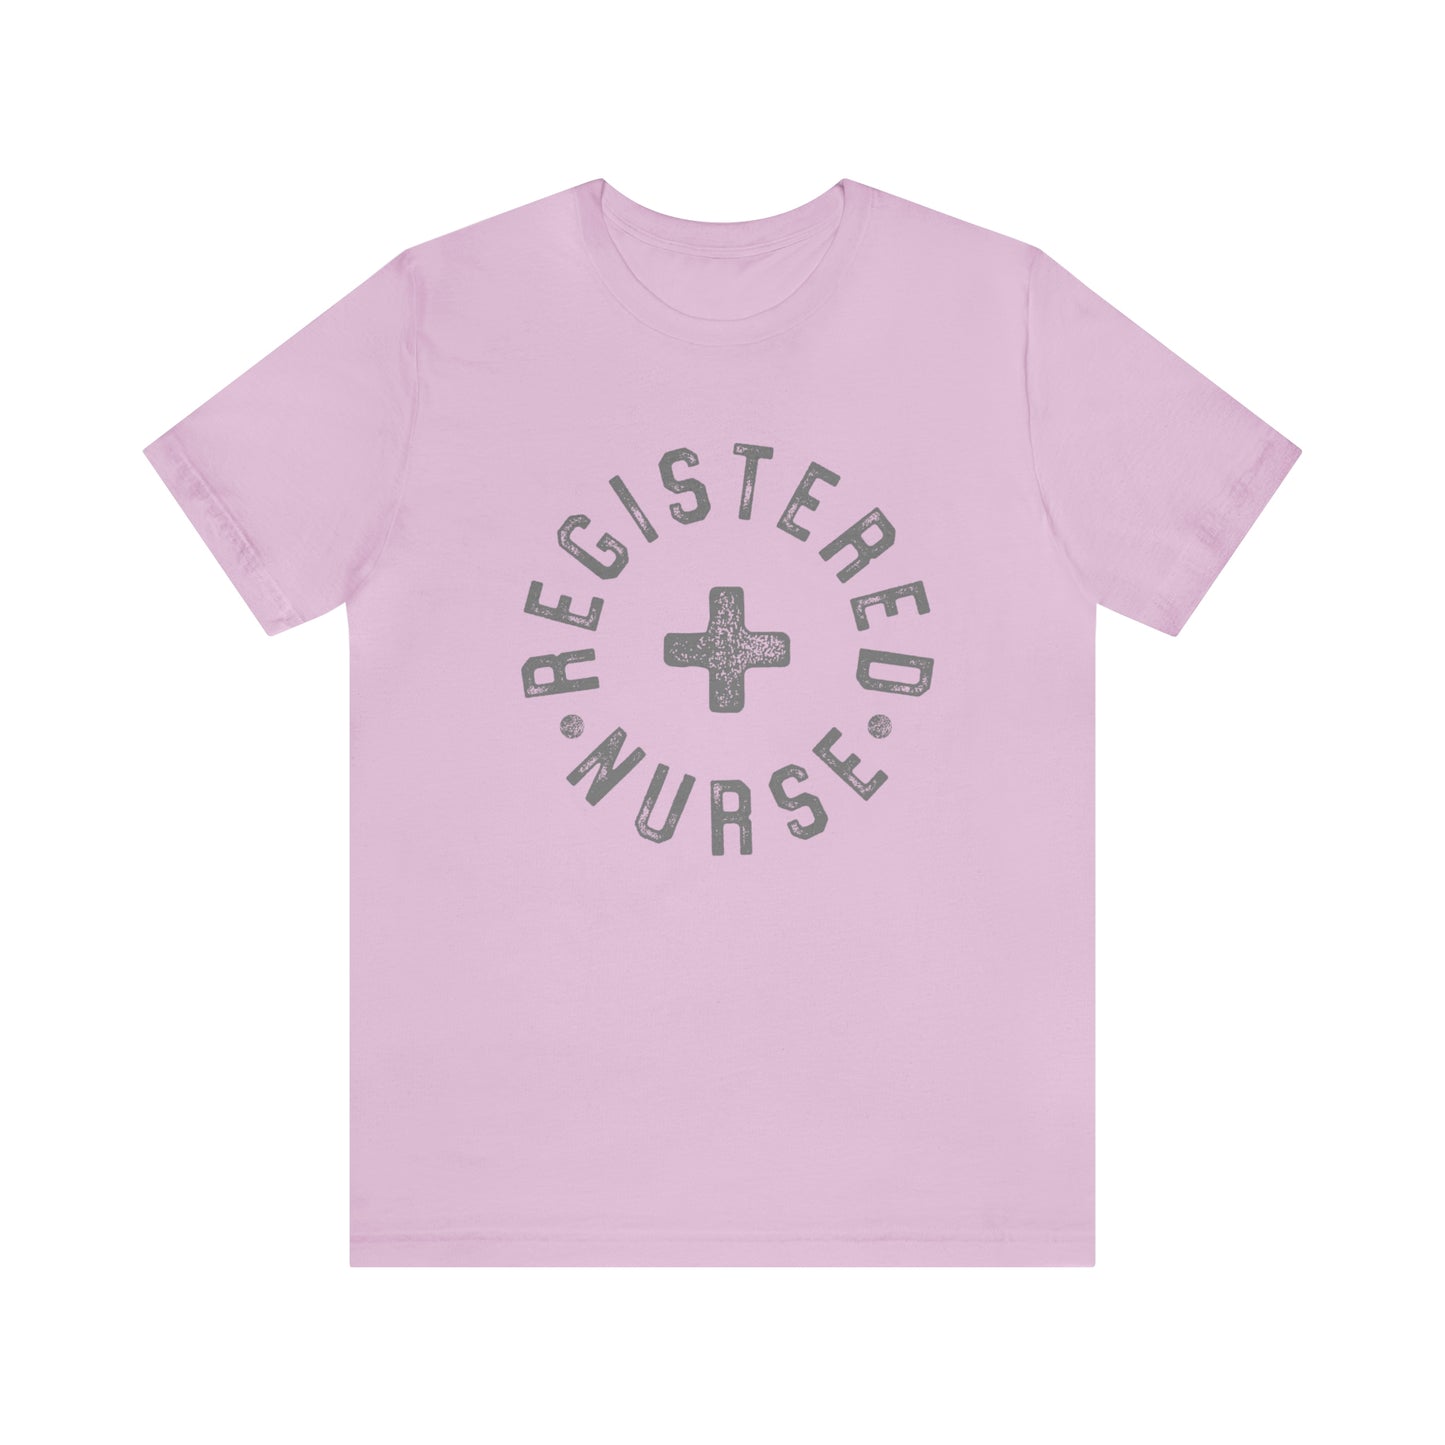 "Registered Nurse" Bella Canvas Unisex Short Sleeve Tee